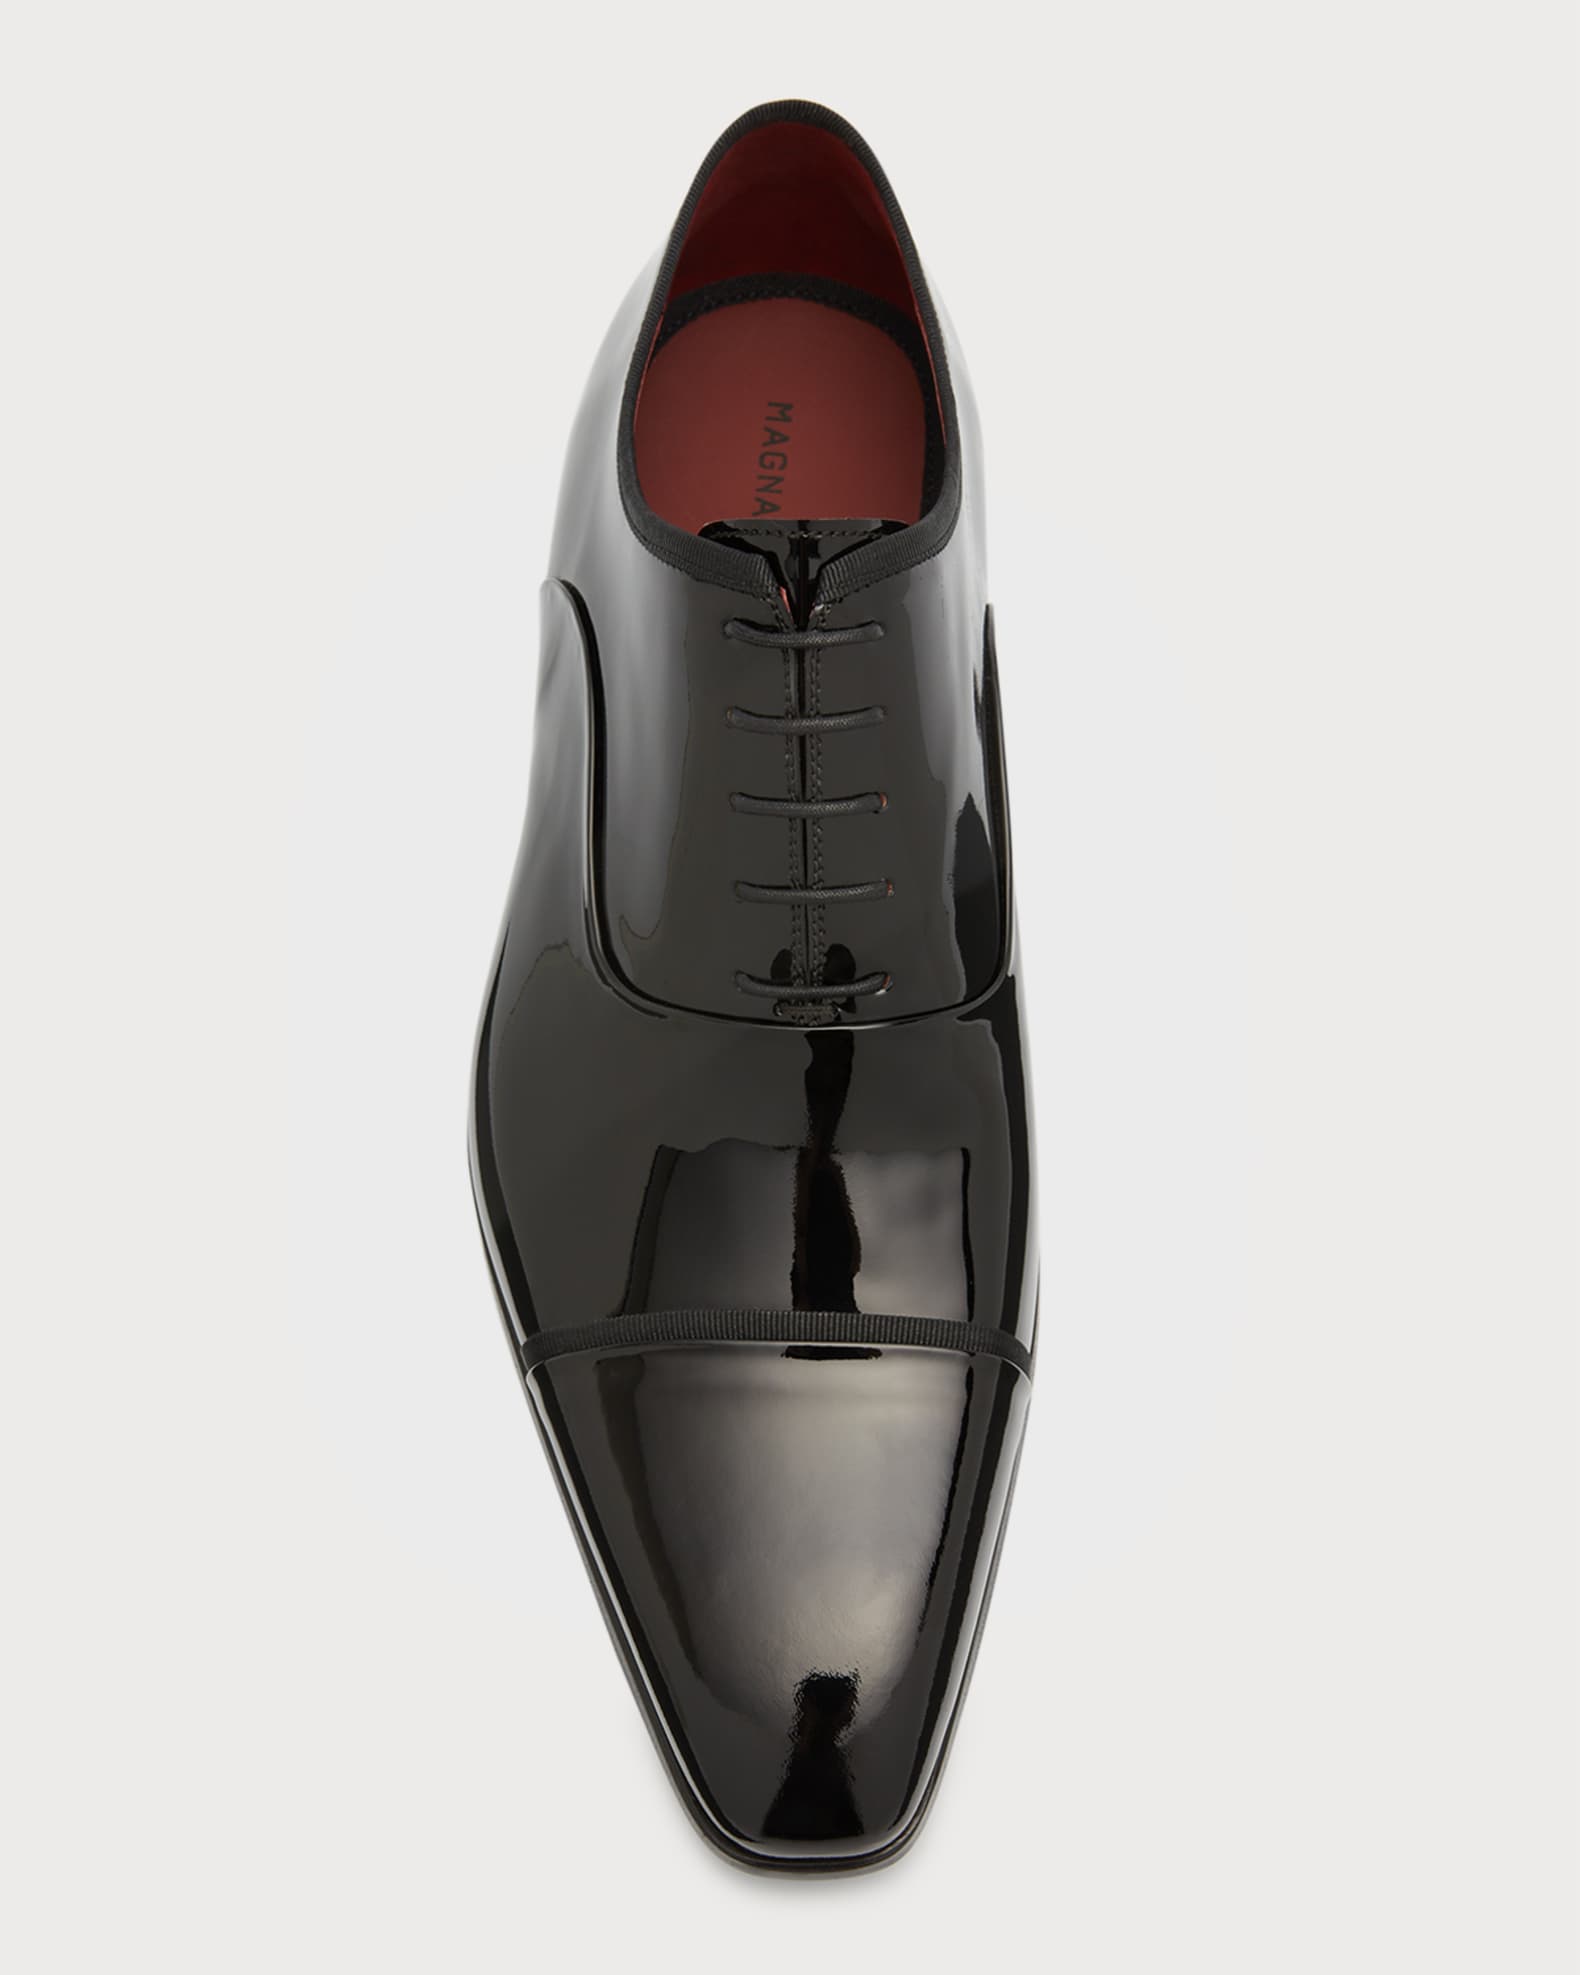 Magnanni Men's Jadiel Patent Cap-Toe Oxfords | Neiman Marcus